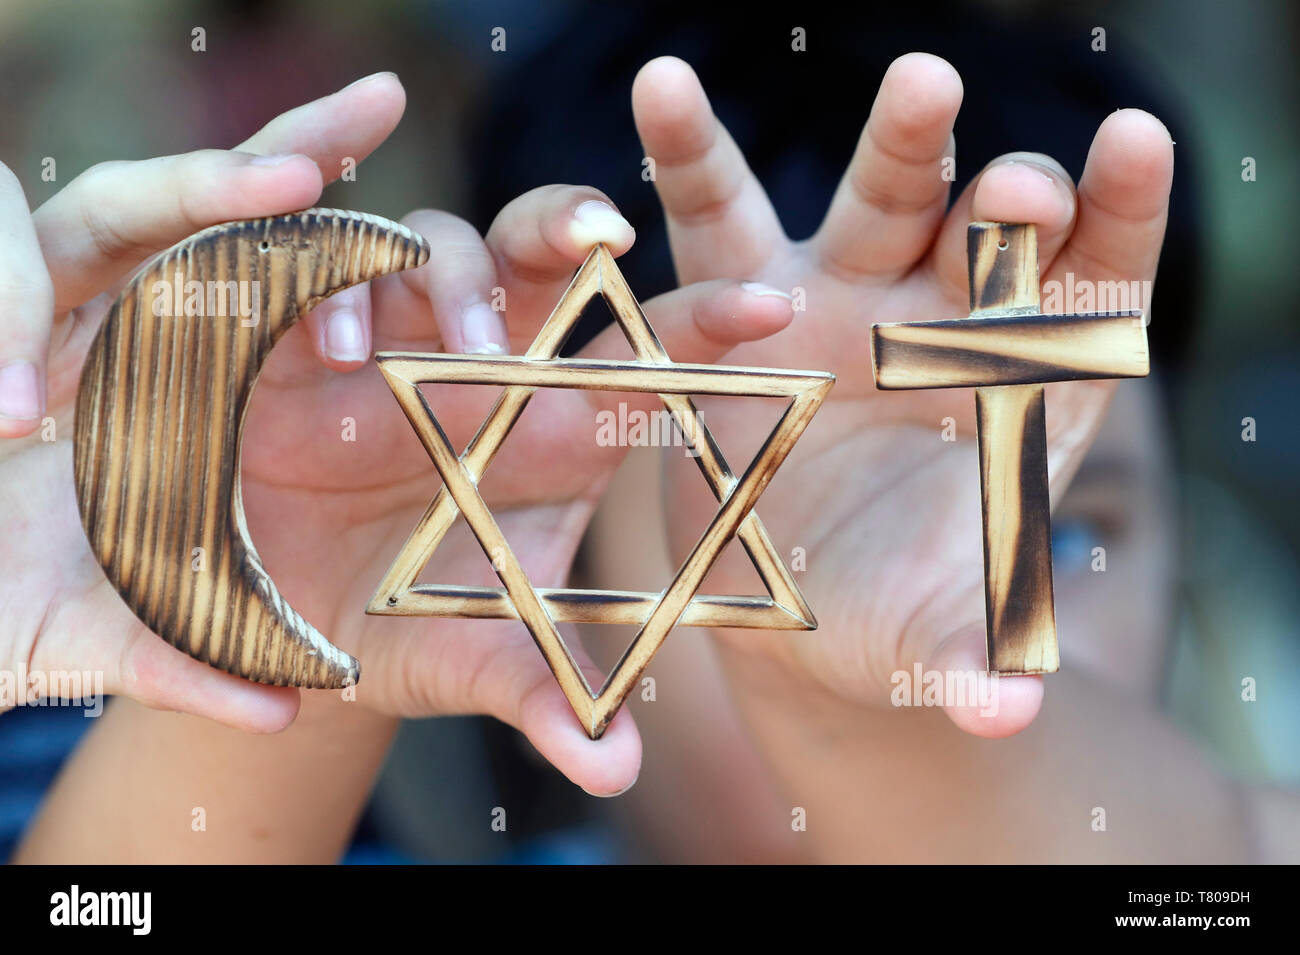 Il cristianesimo, islam ebraismo, le tre religioni monoteiste con simboli di stella ebraica, musulmana mezzaluna e una Croce Cristiana, Vietnam Foto Stock